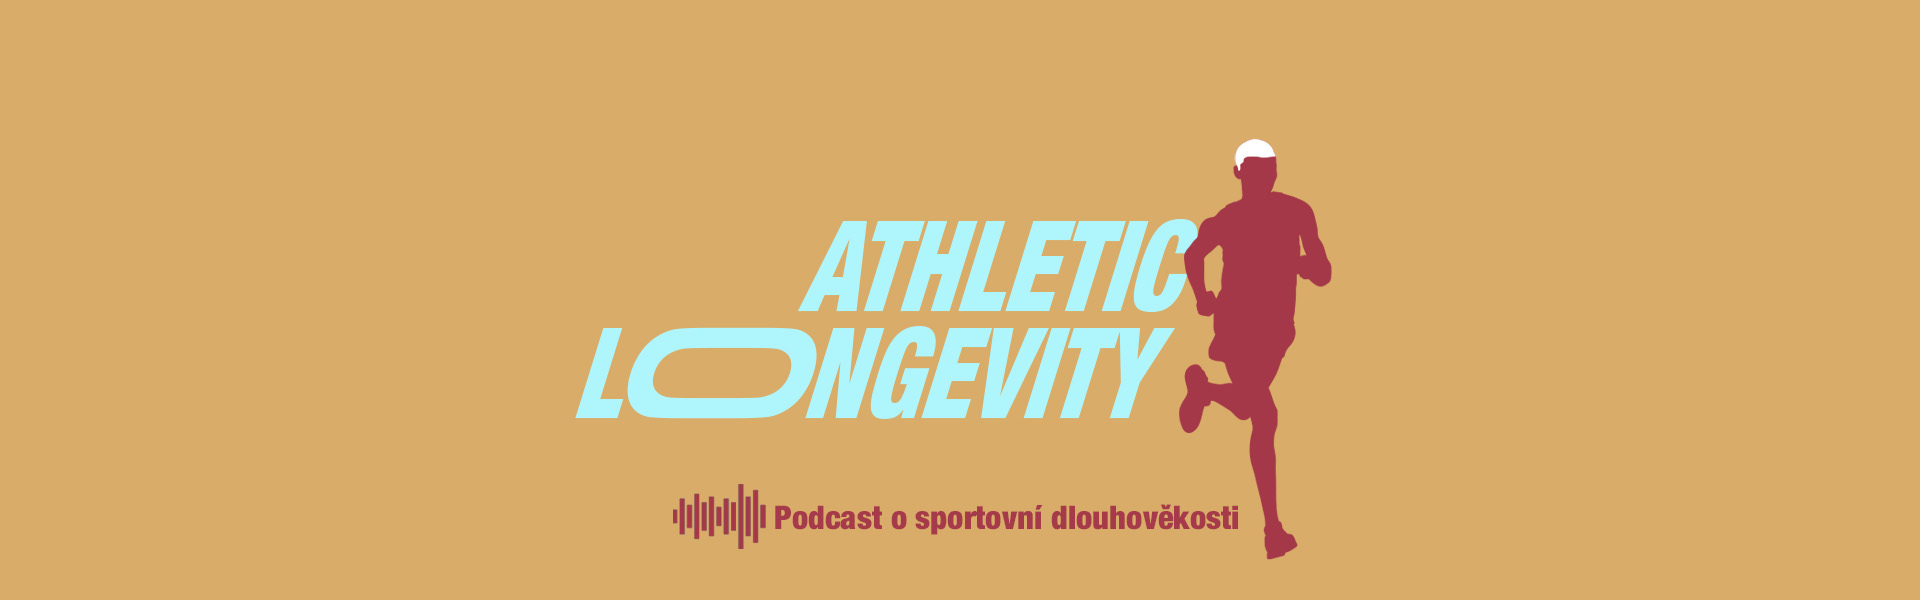 Athletic Longevity